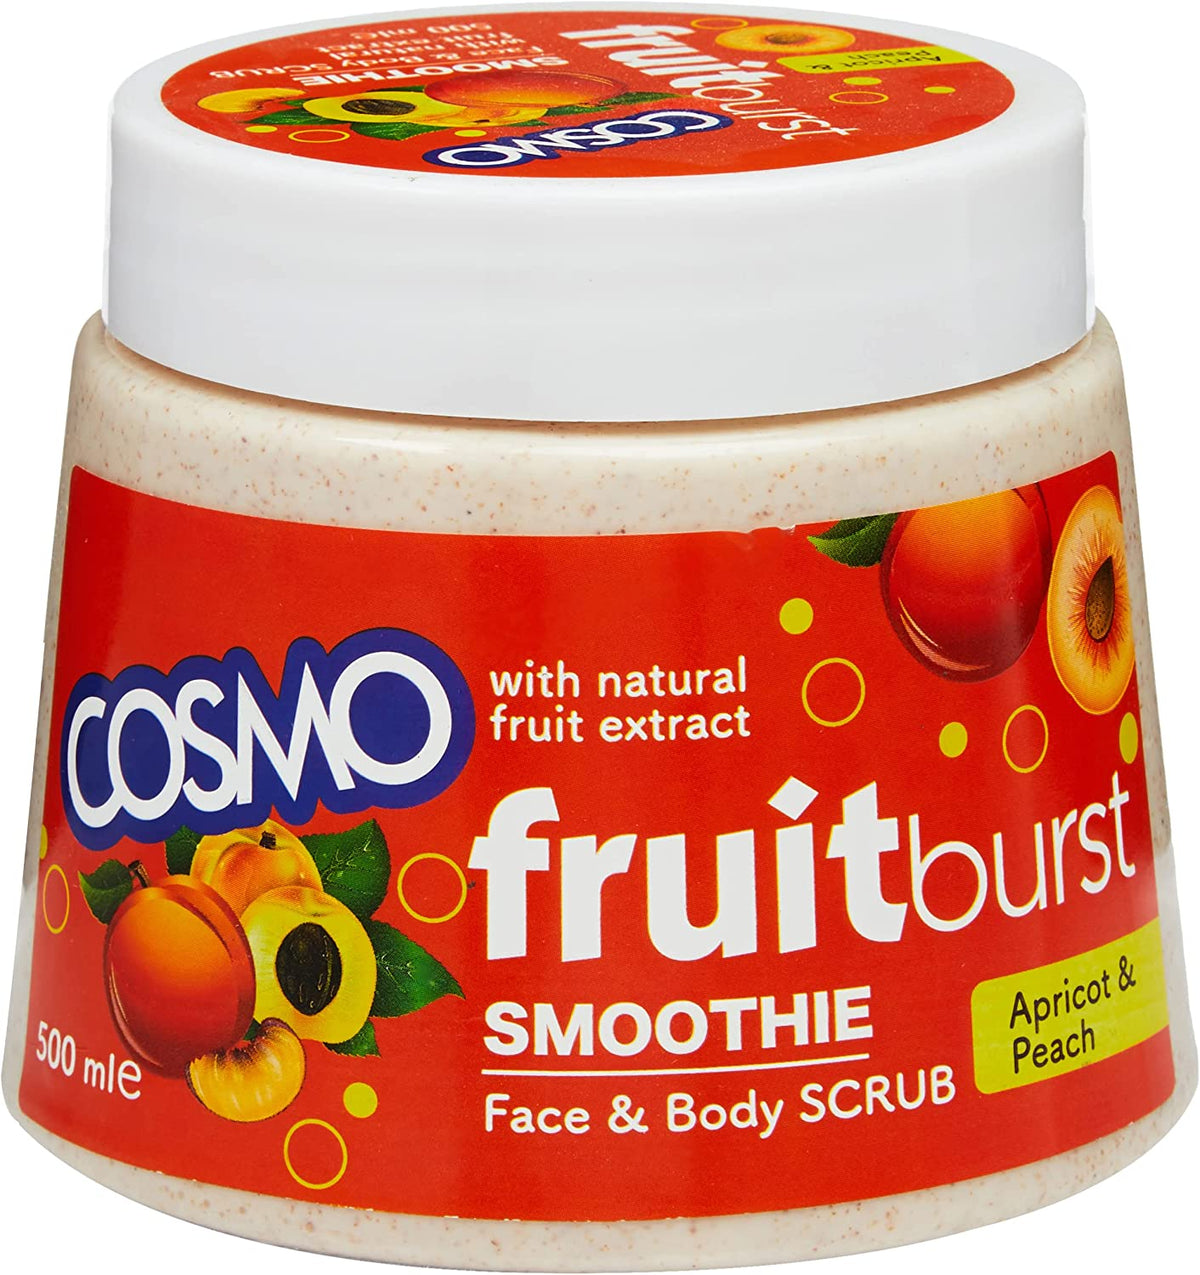 Cosmo face & Body Scrub Apricot & Peach 500ML